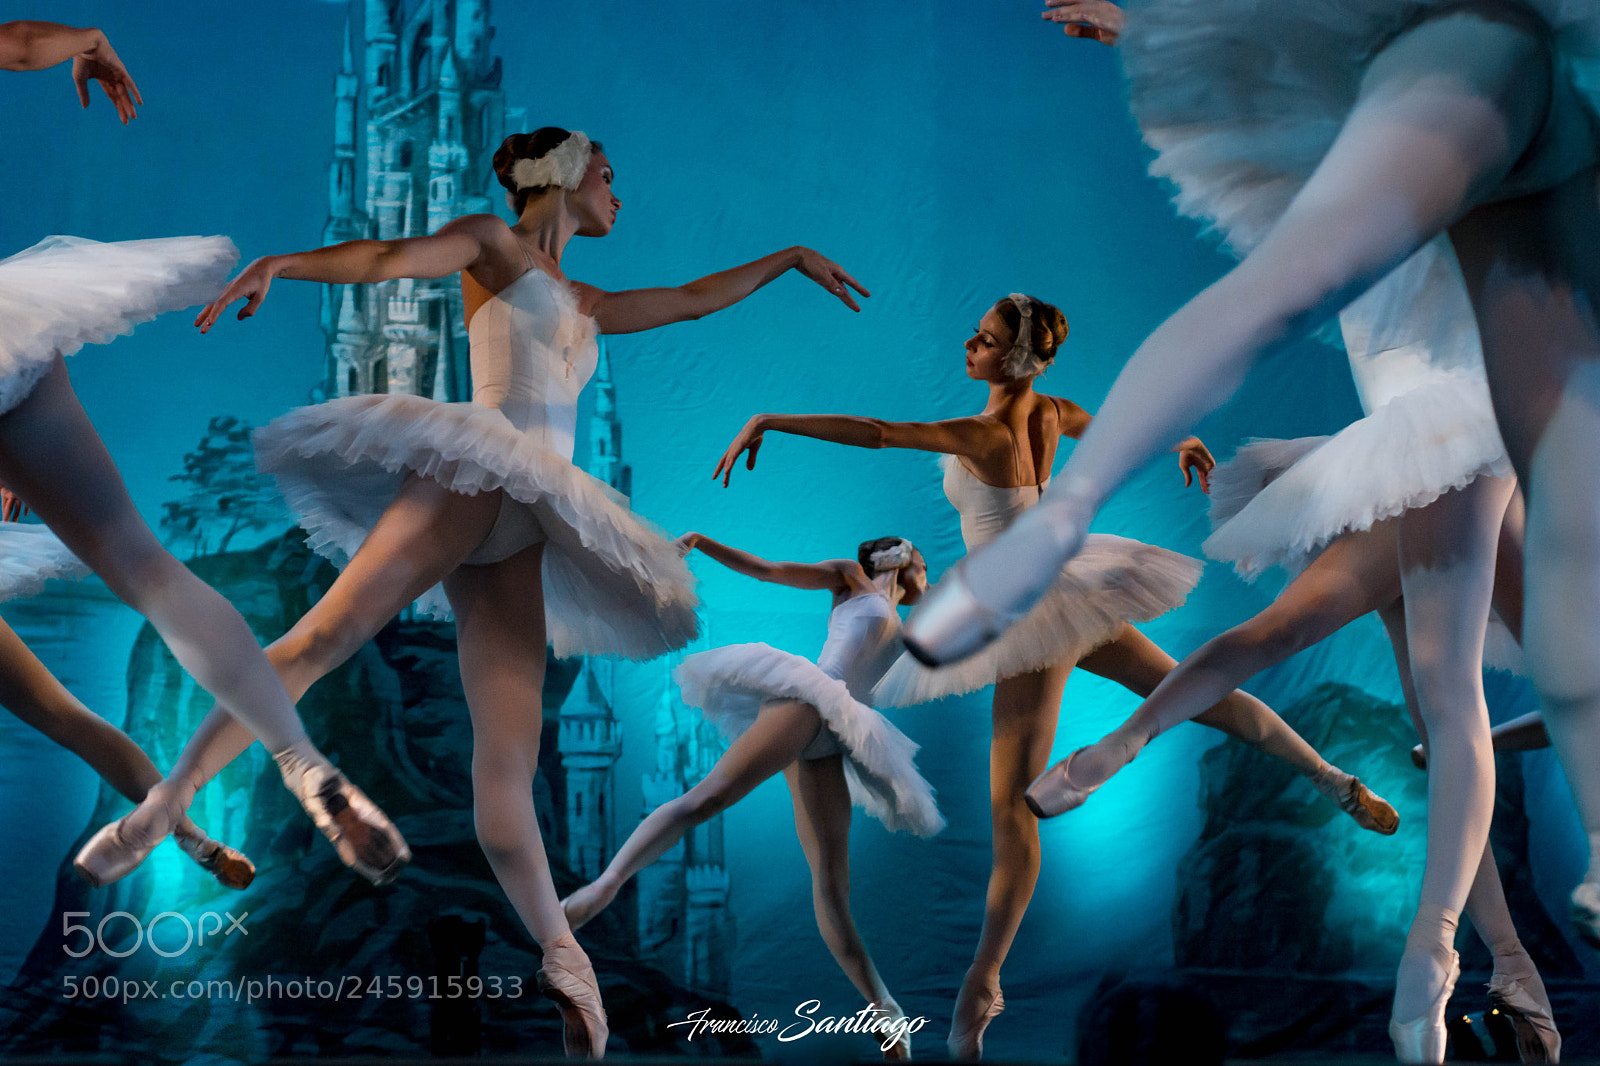 Nikon D7200 sample photo. Ballet bolshoi de bielorrusia photography